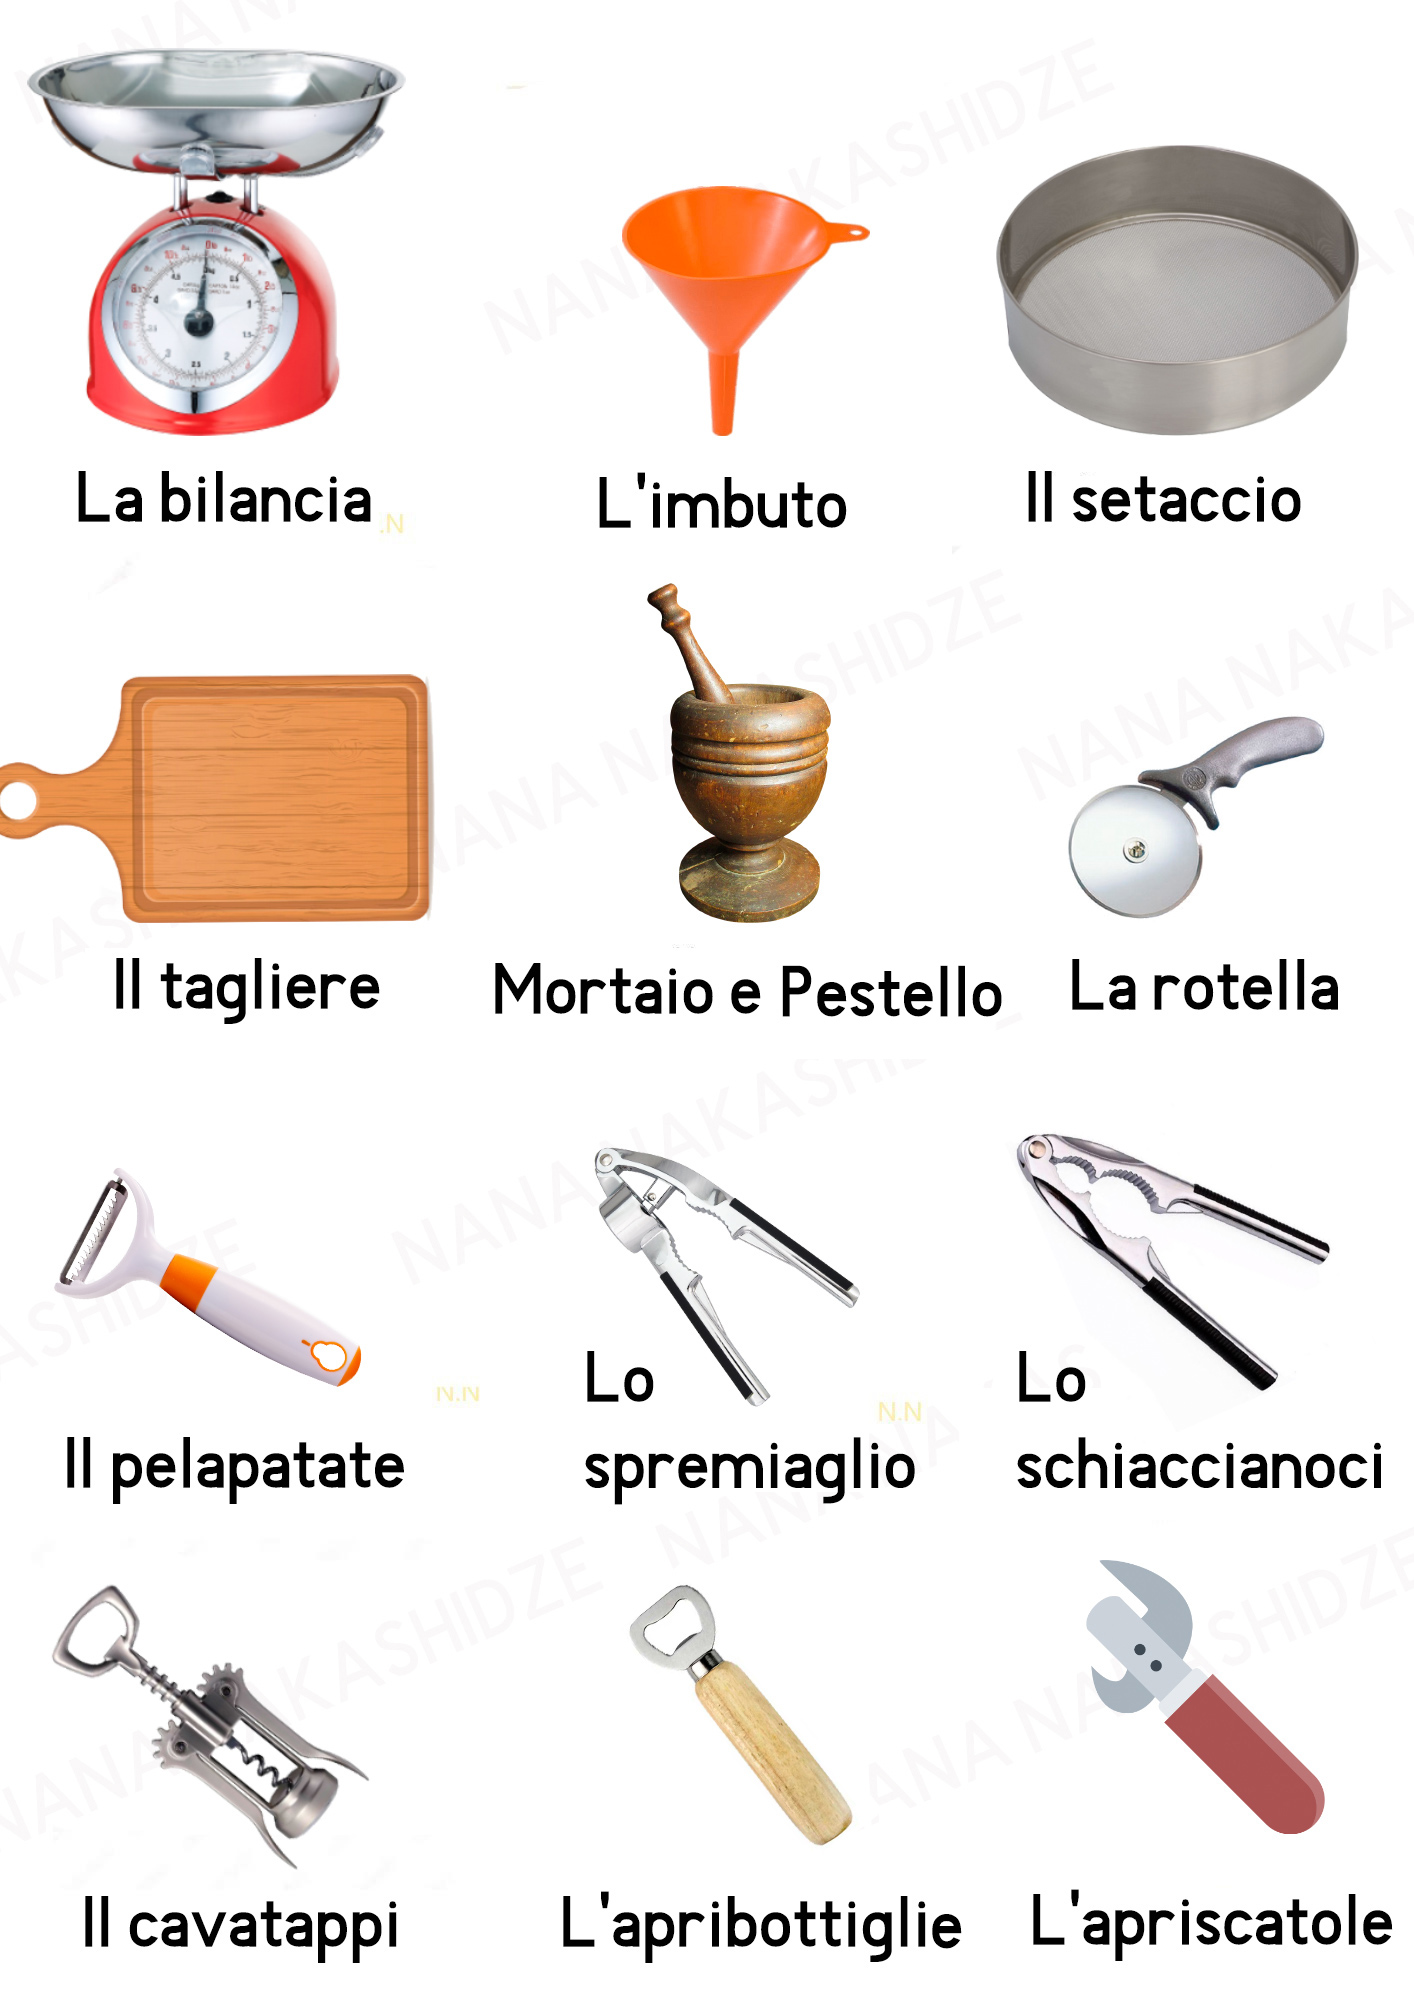 თარგმნა იტალიურ ენაზე - in cucina